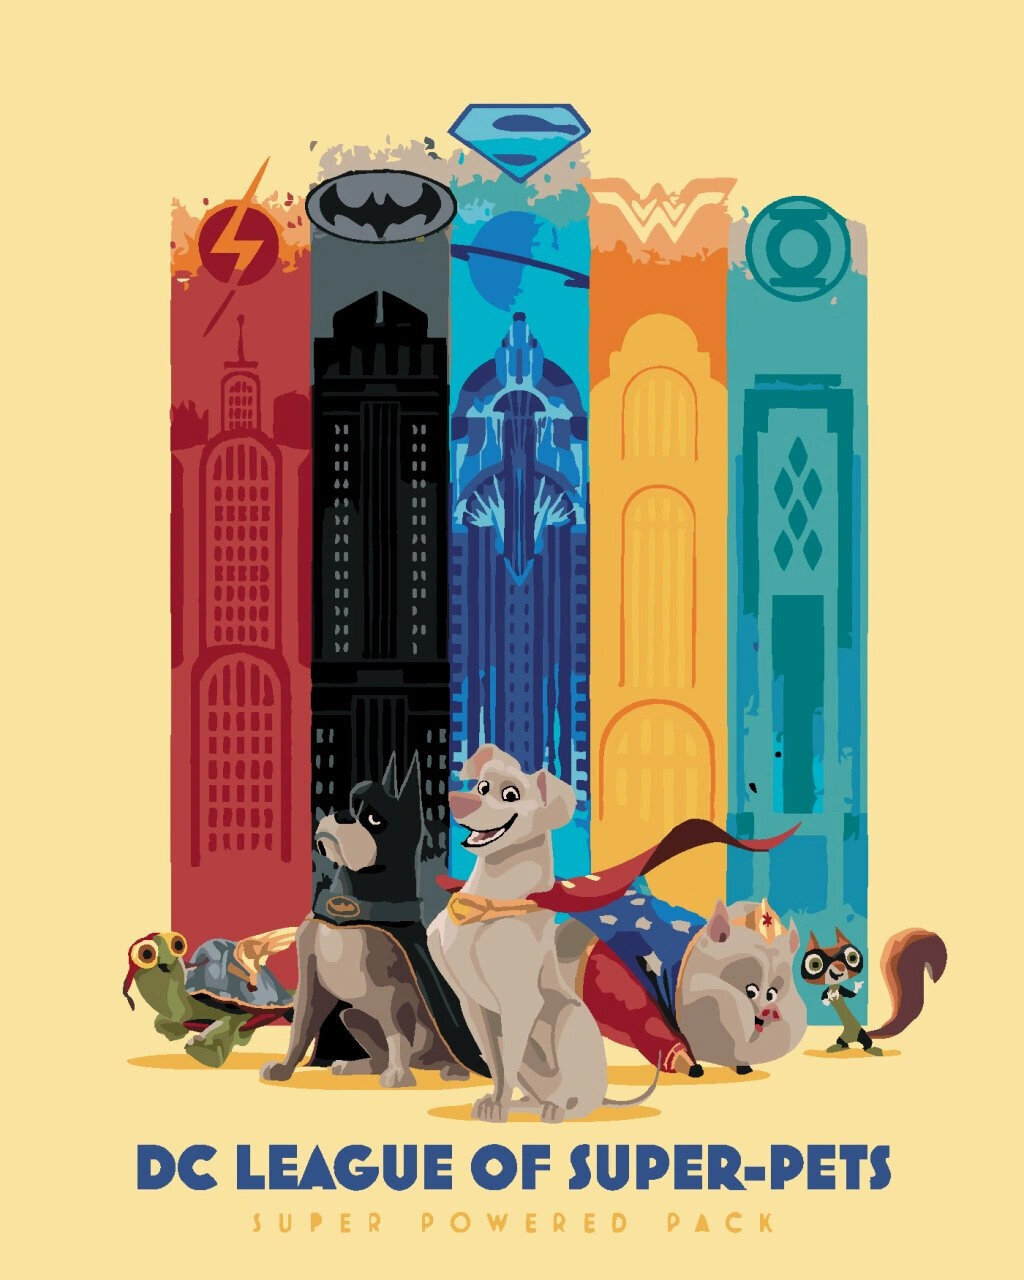 Pintura por números Zuty Pintura por números Super-Pets Super Powered Pack (DC League Of Super-Pets)